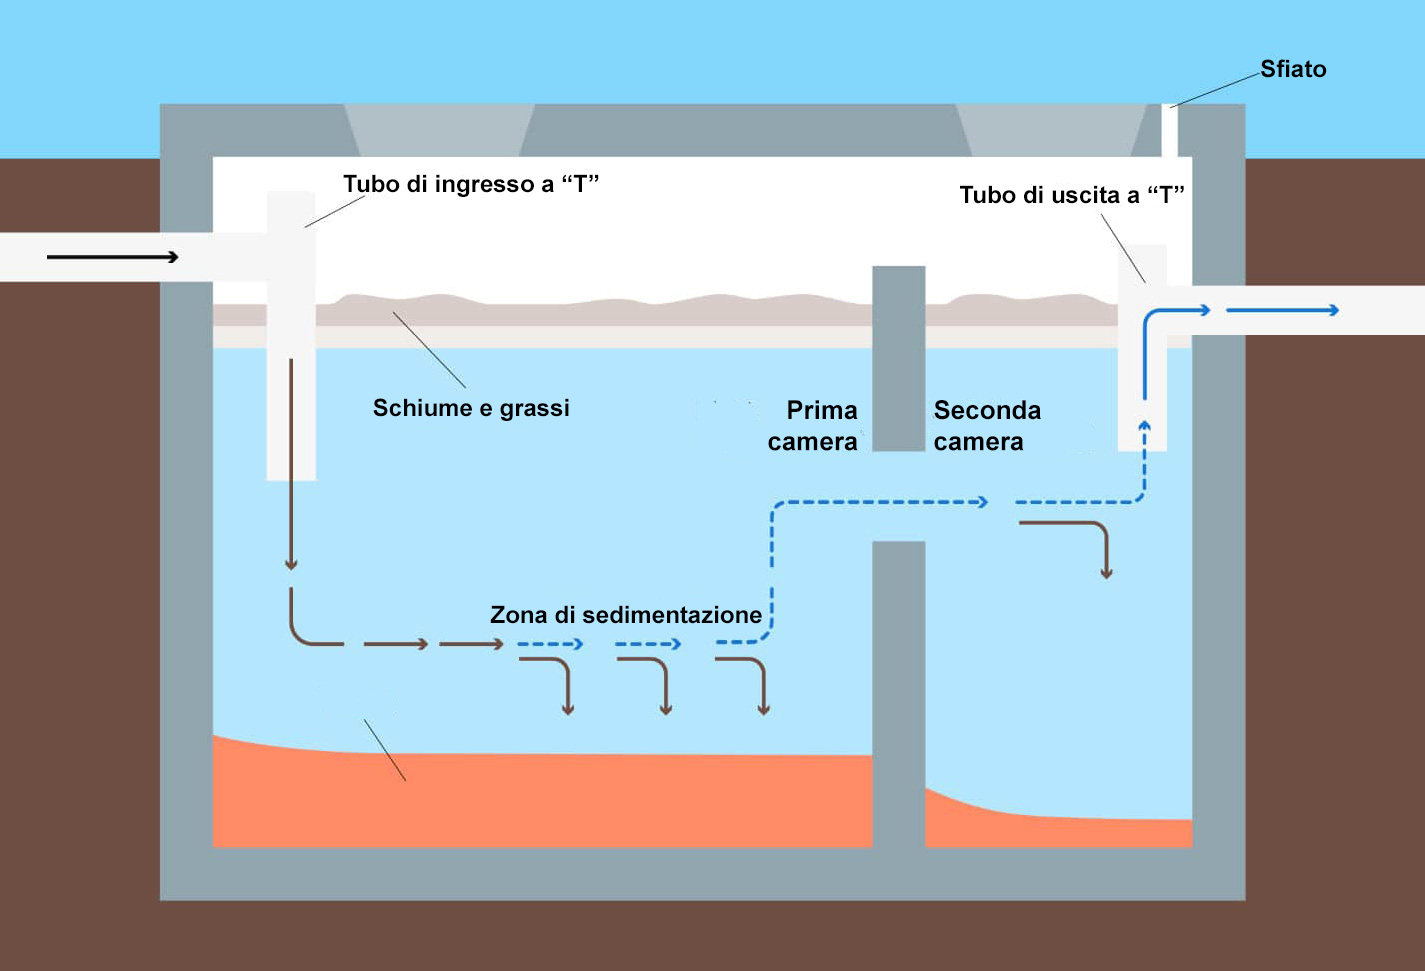 Fossa settica e impianto depurazione a fanghi attivi: qual è la differenza?